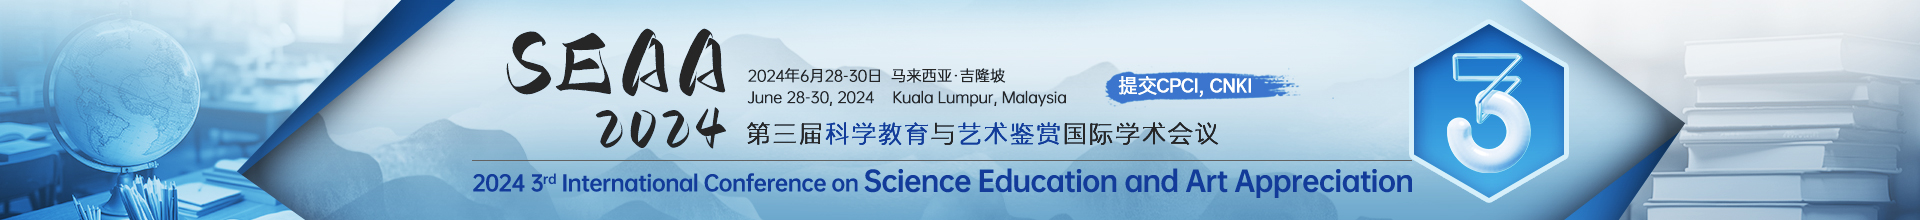 6月吉隆坡-SEAA-2024-学术会议云.jpg